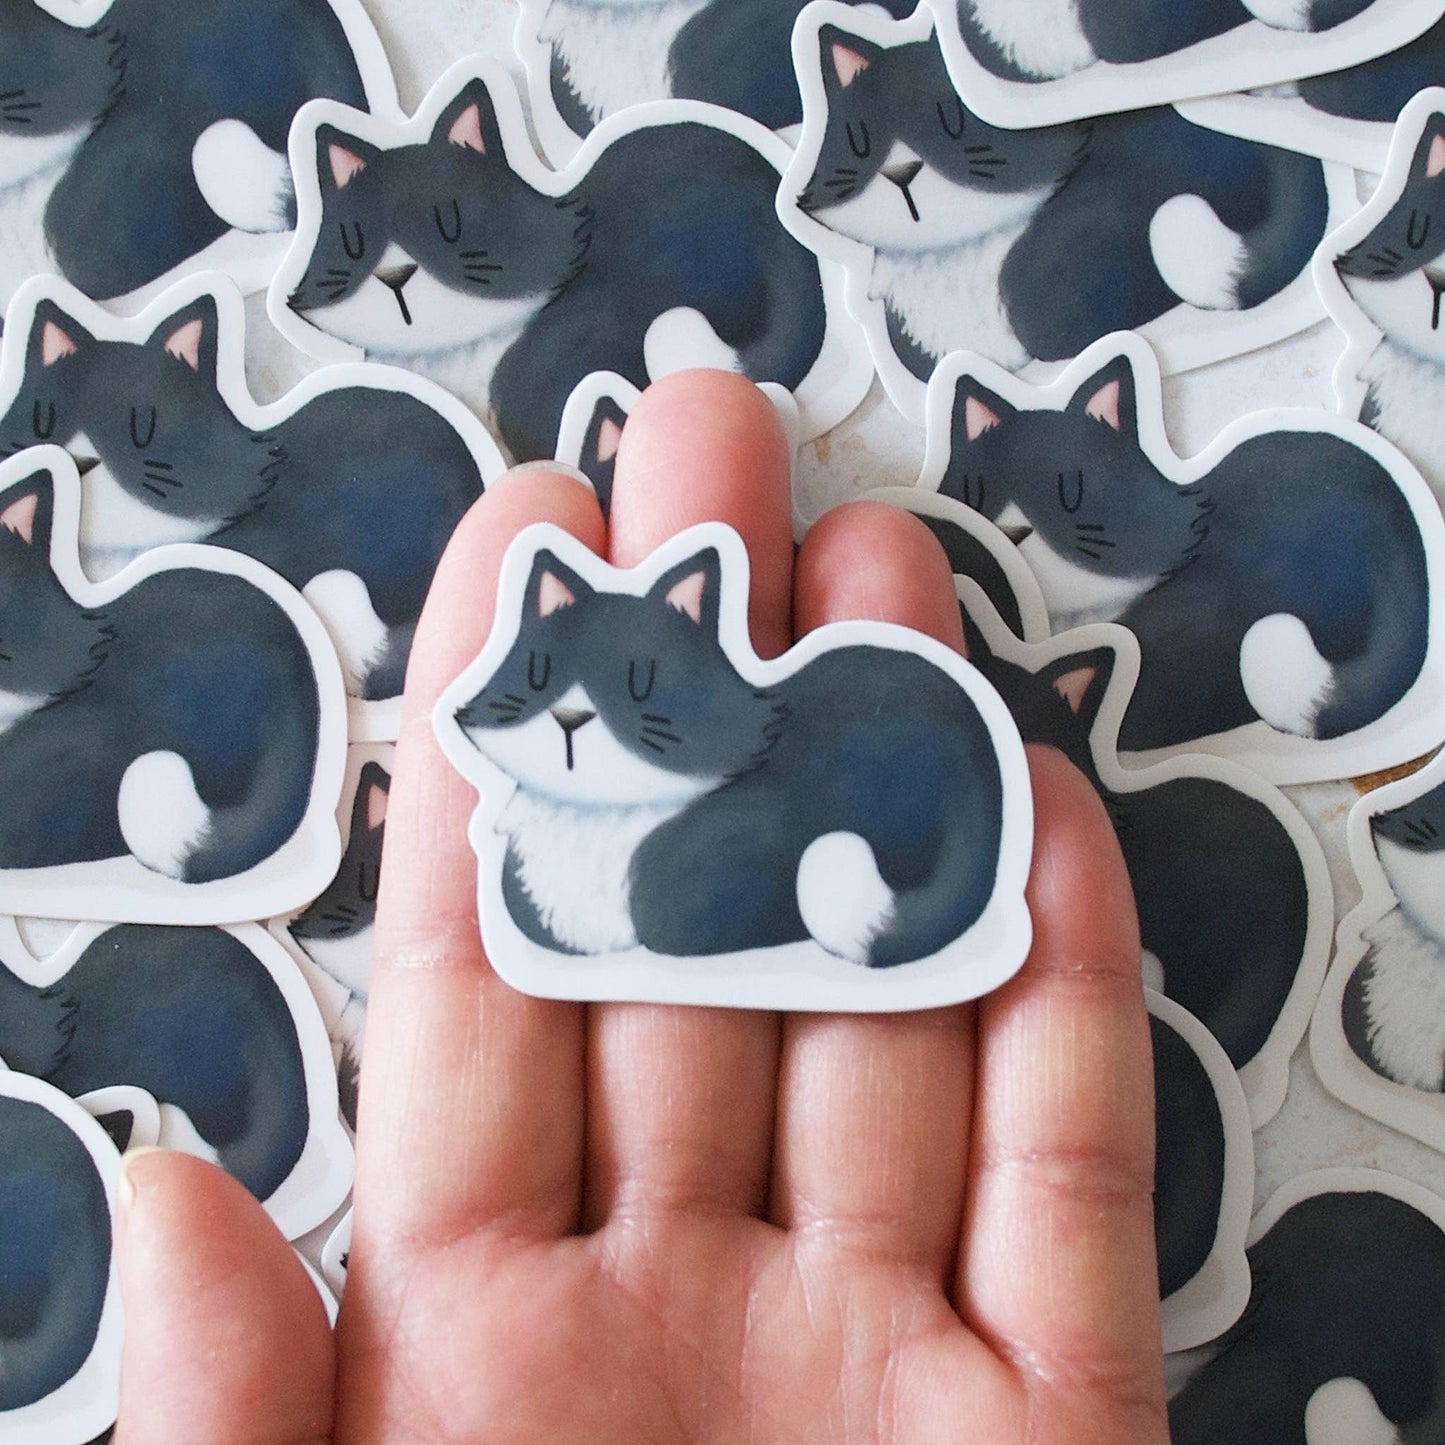 Hop & Flop - Black White Cat Loaf Vinyl Sticker